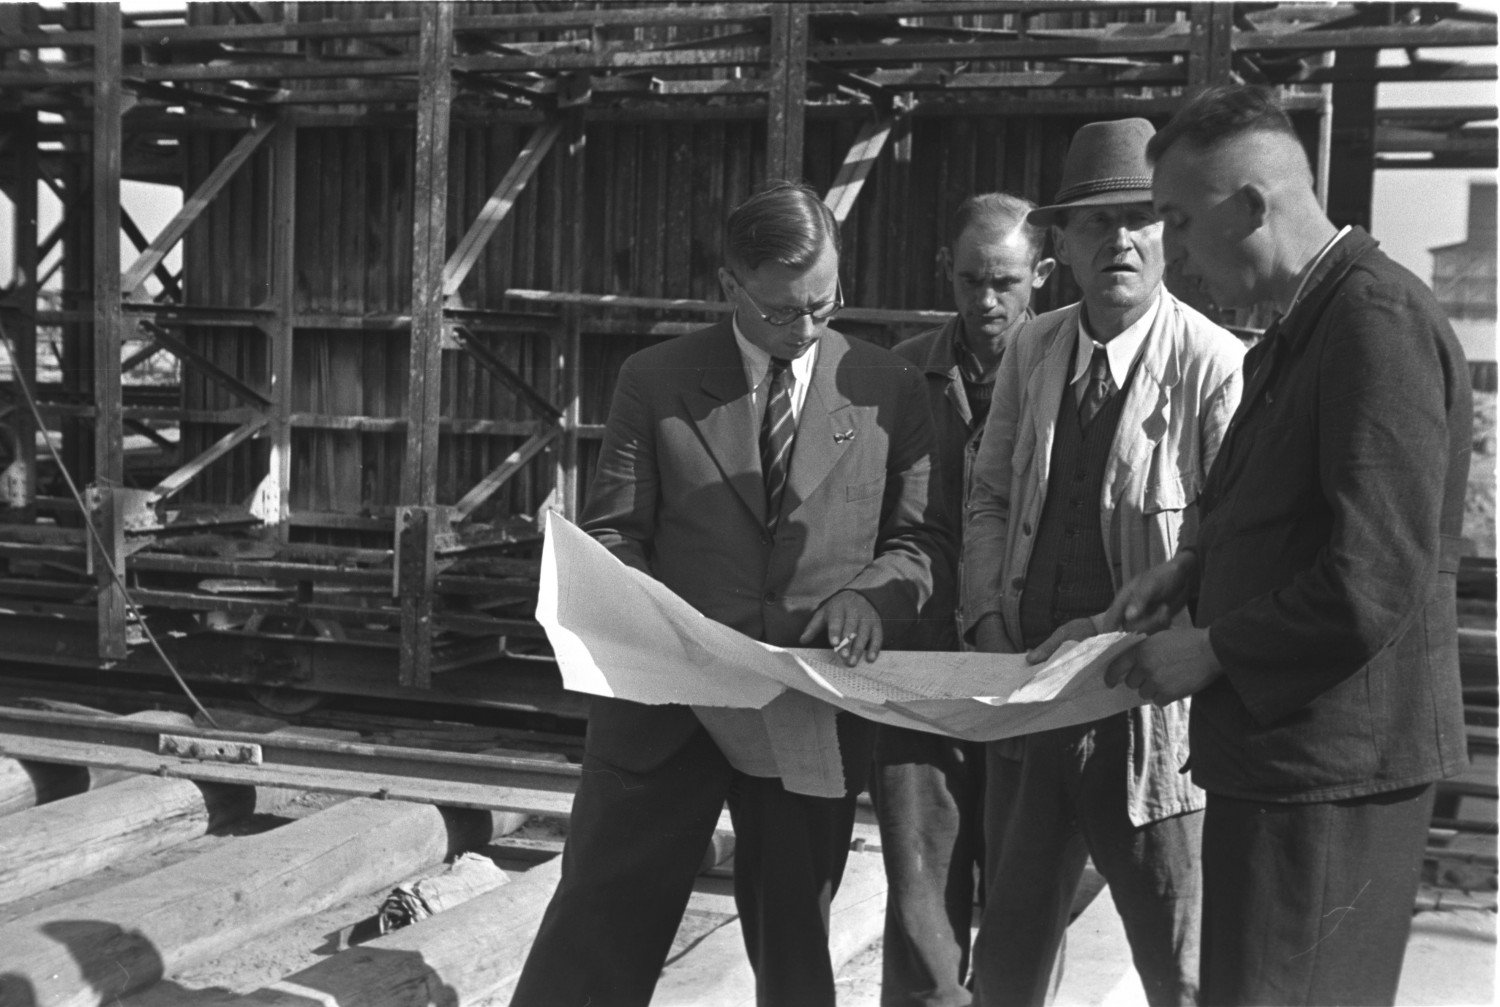 Historische Aufnahme in schwarz-weiss aus dem Jahr 1944. Vier Männer stehen auf der Baustelle und blicken auf einen Plan, den sie aufgespannt in ihren Händen halten. Sie tragen gepflegte Kleidung, zum Teil mit Krawatte. Einer von ihnen trägt einen Herrenhut. Es handelt sich um den Bauleiter Steig. Es scheint sich um eine Besprechung zu handeln. .  